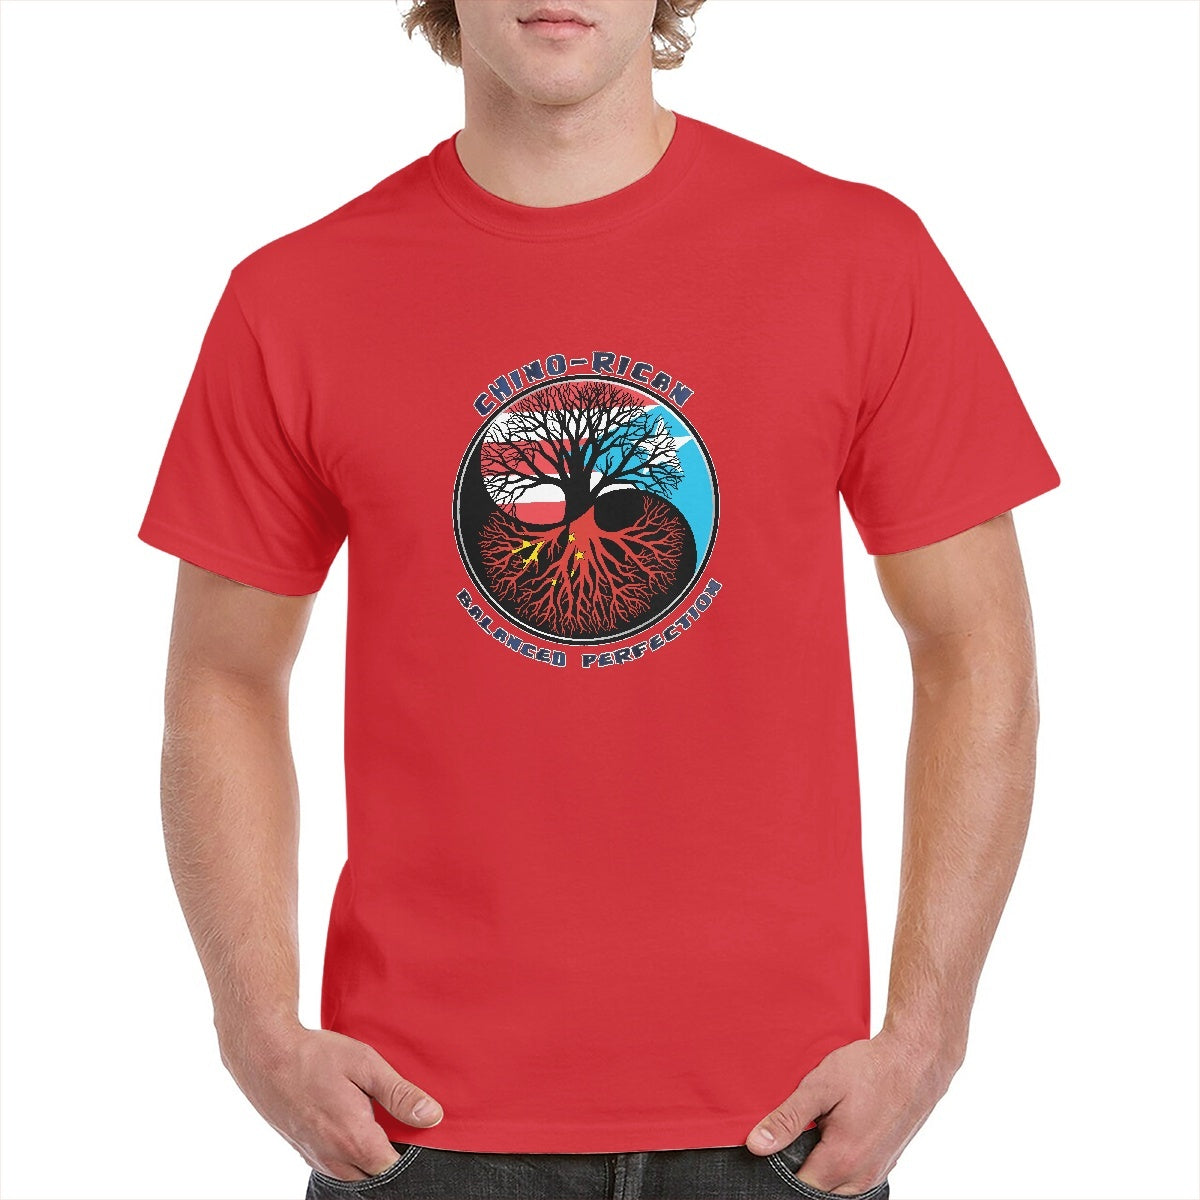 Chino-Rican Balanced Perfection T-Shirt (Small-5XL)